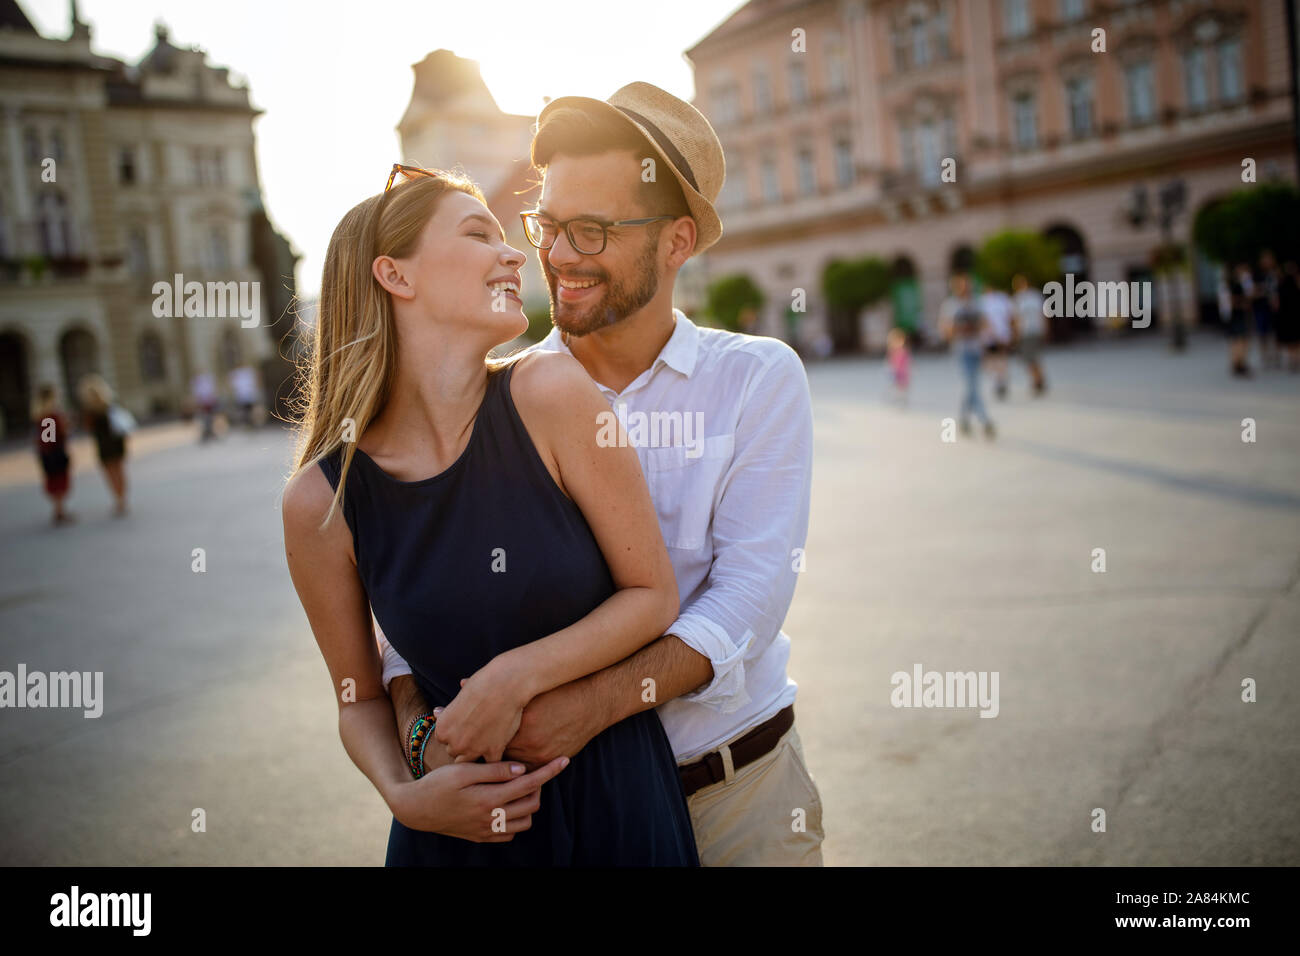 Ihnen gerne touristische Paar in Liebe, Spaß, Reisen, lächelnd im Urlaub Stockfoto